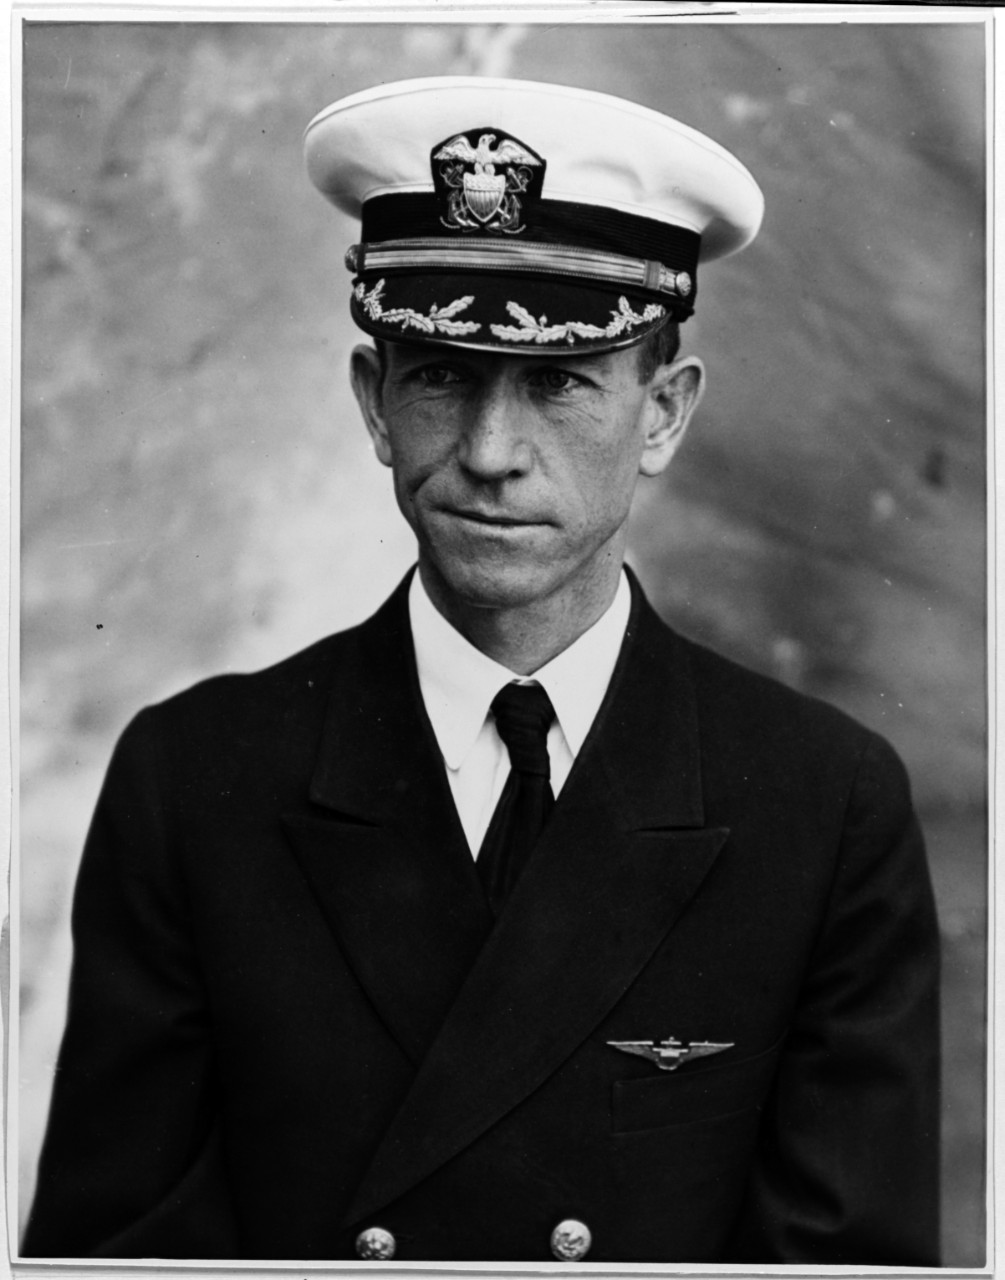 Captain Warren G. Child, USN